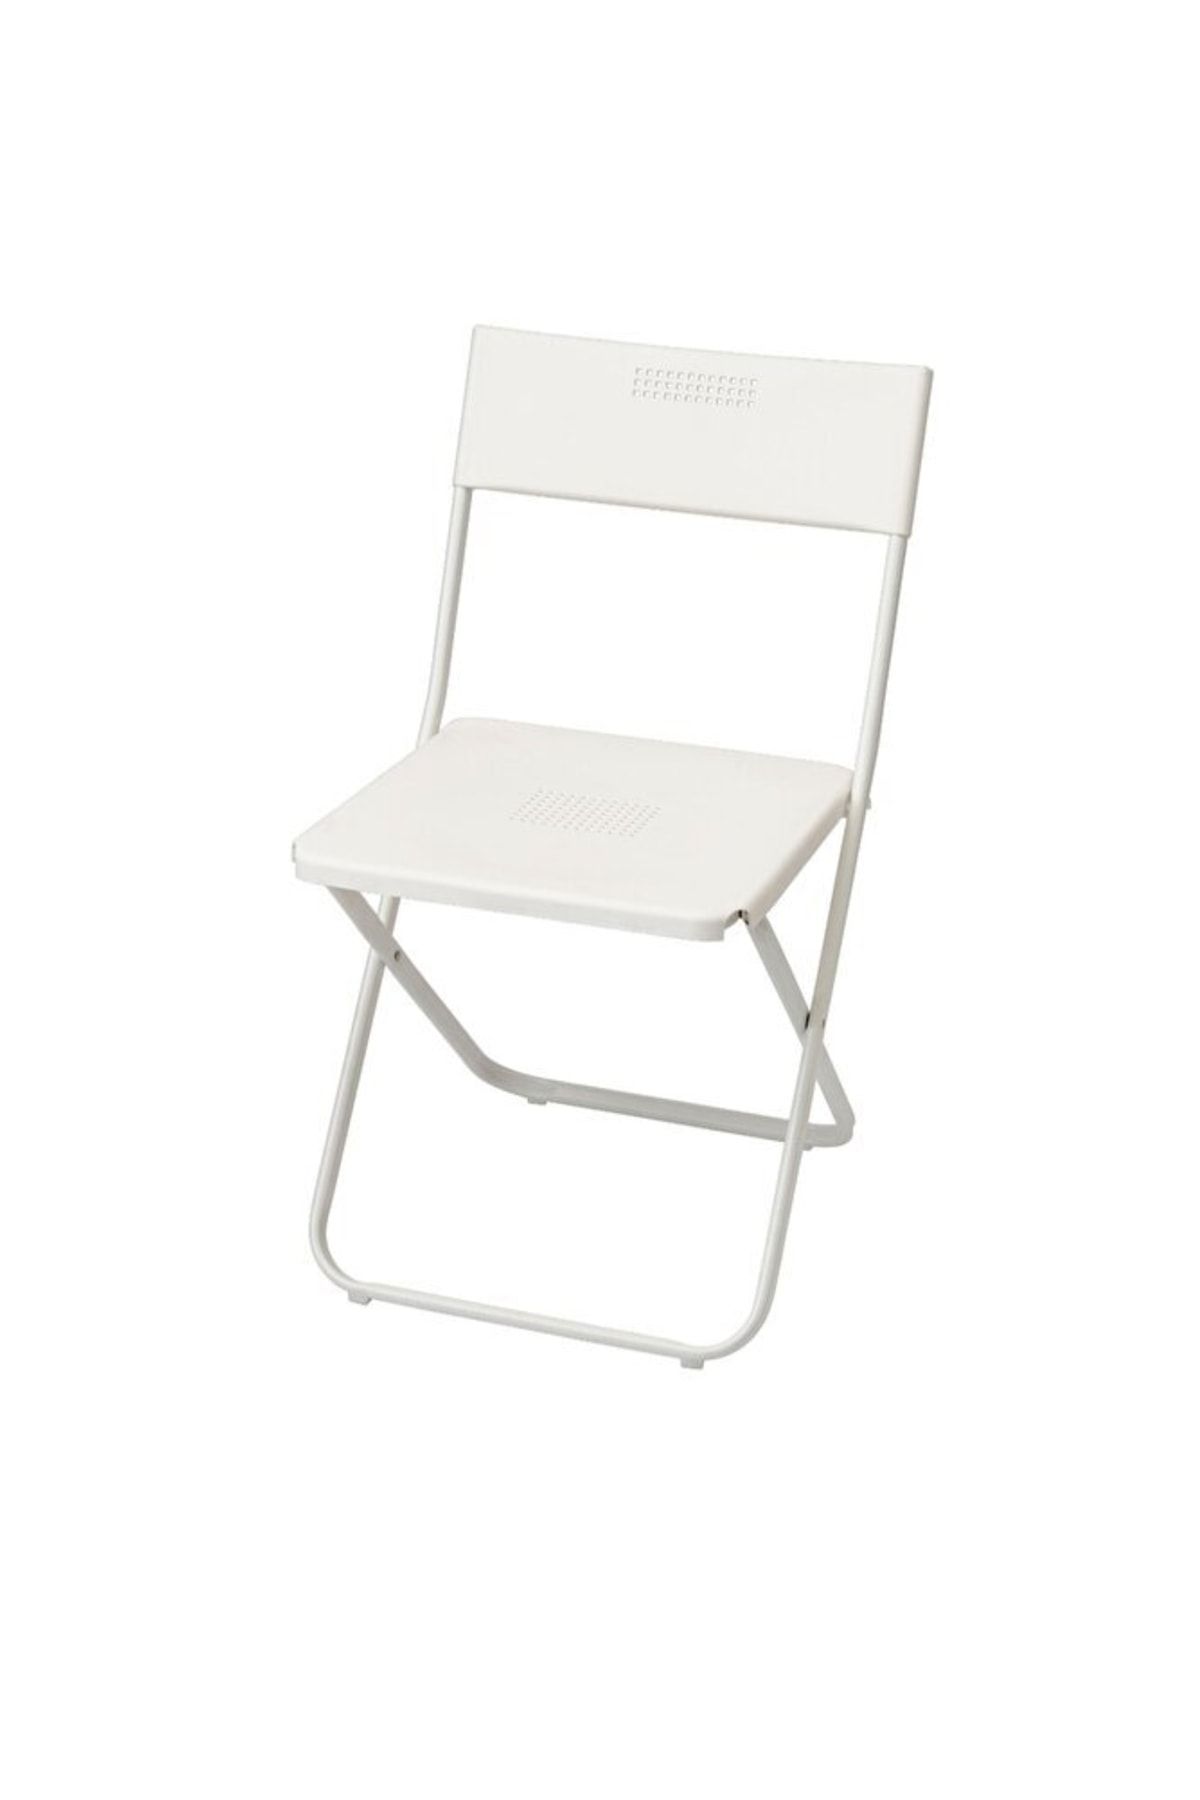 IKEA Fejan Katlanabilir Sandalye, Beyaz